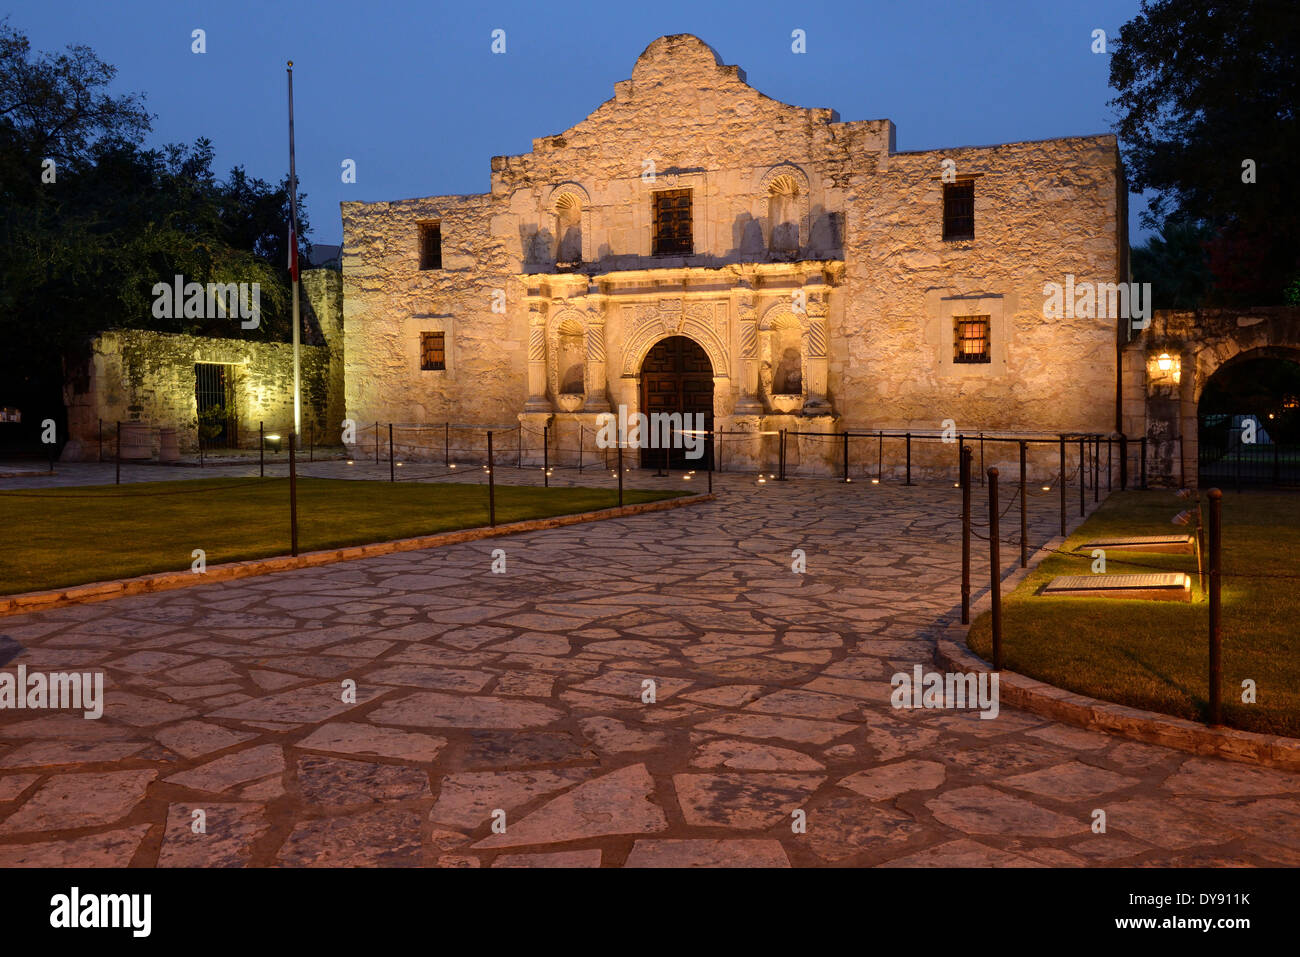 USA, United States, Amérique, Texas, San Antonio, l'Alamo, Alamo, mission, Espagnol, crépuscule, bâtiment, monument, icône Banque D'Images